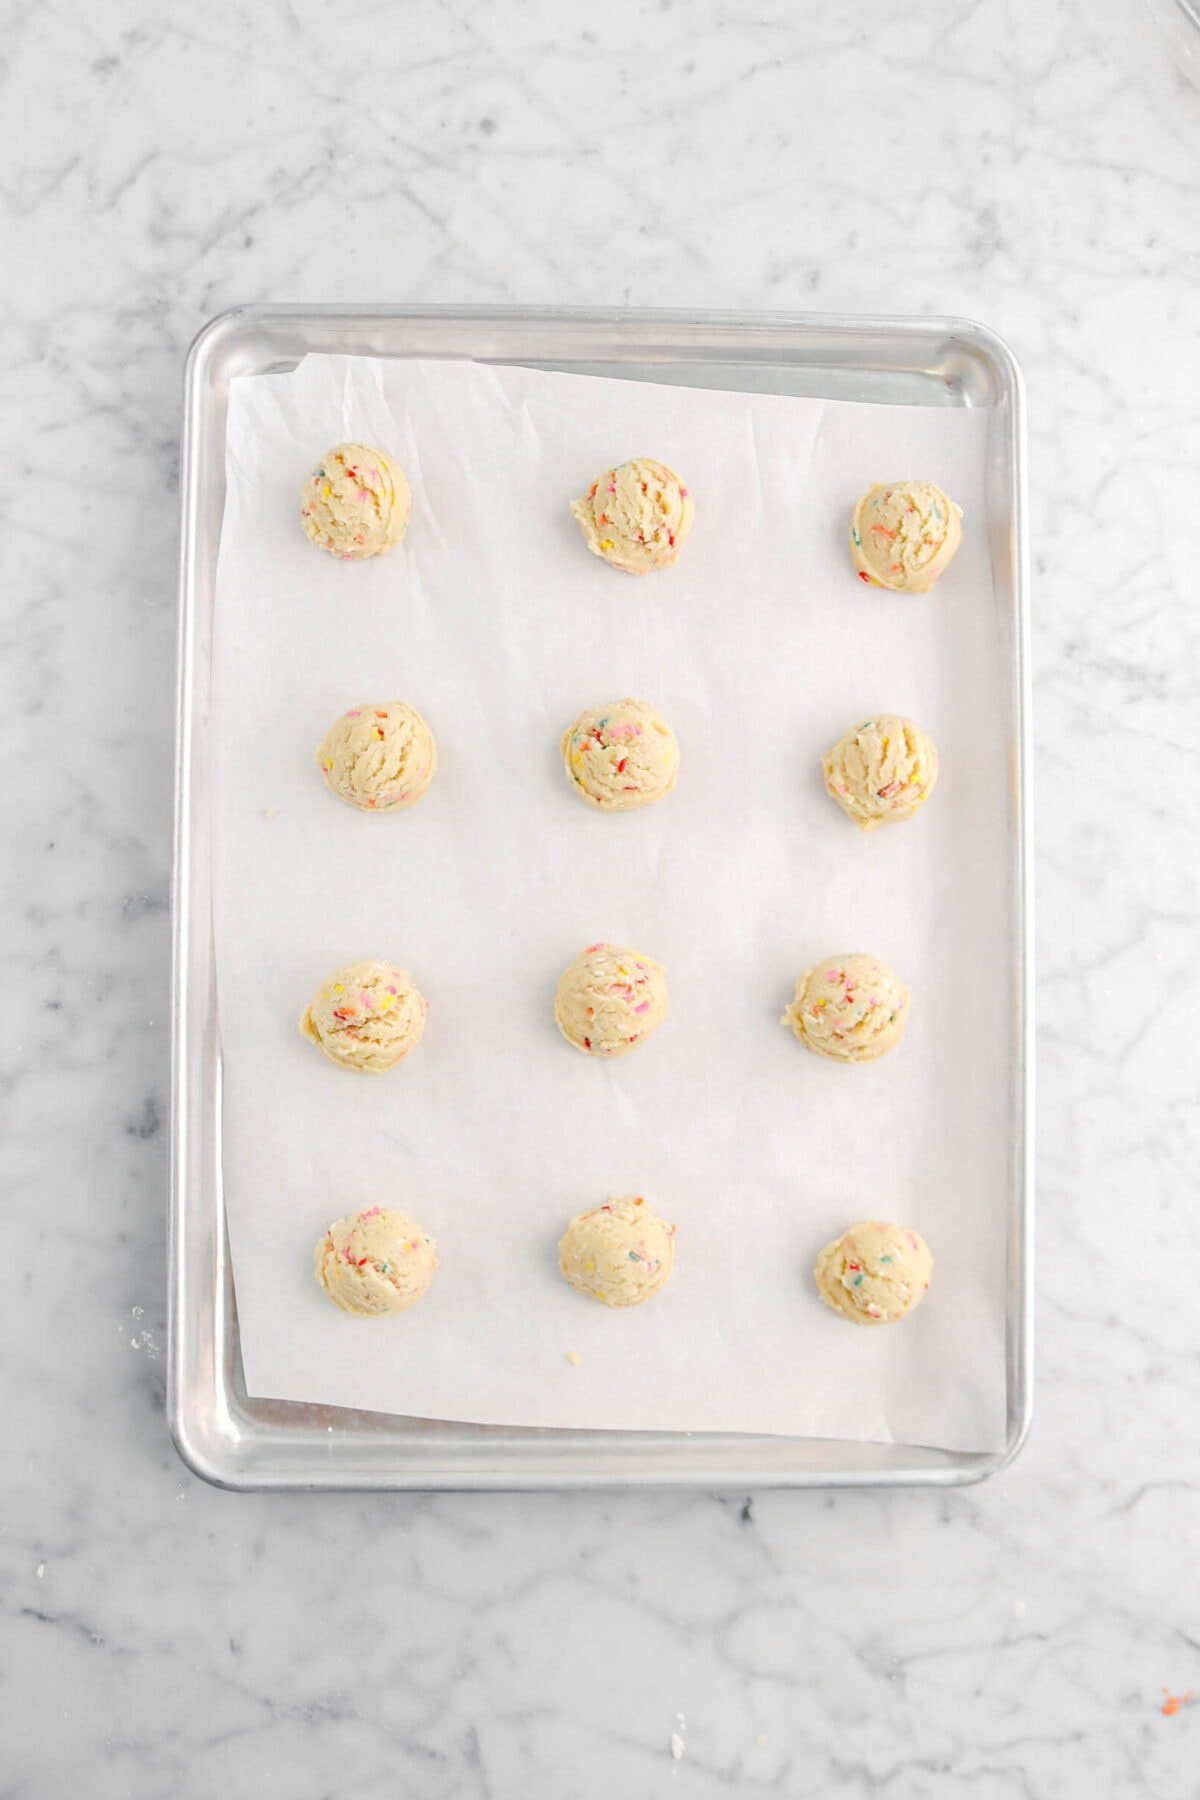 twelve cookie dough balls on parchment paper